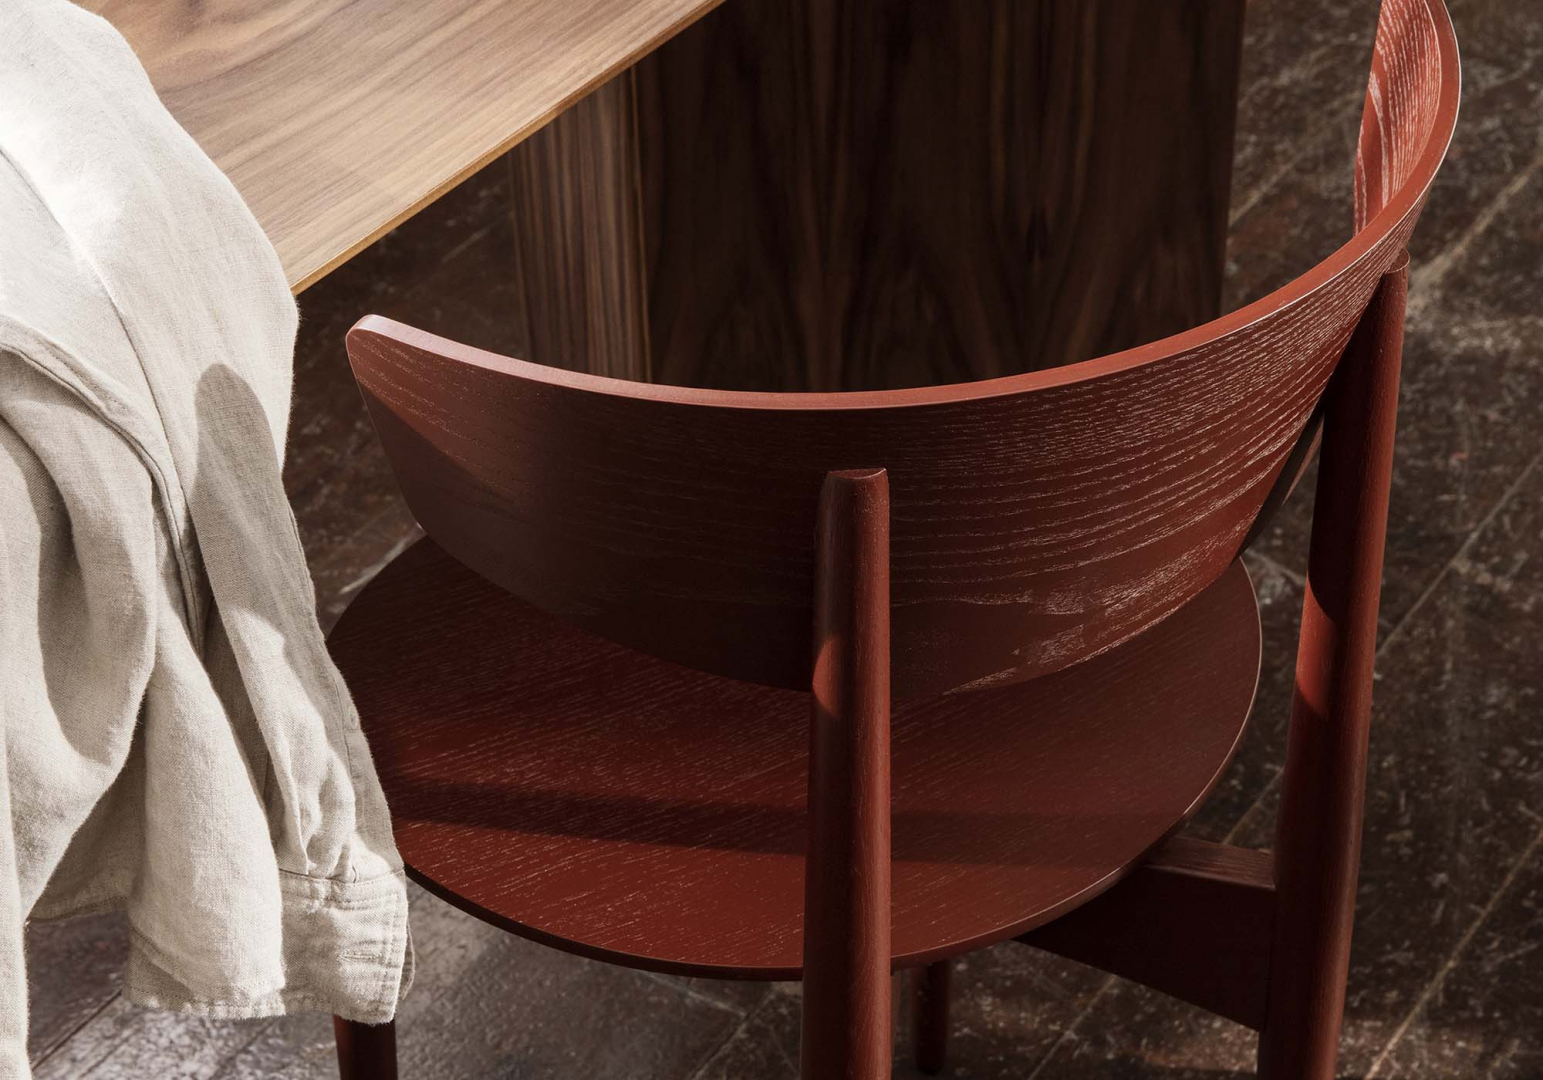 Chaise de table Herman design - FERM LIVING